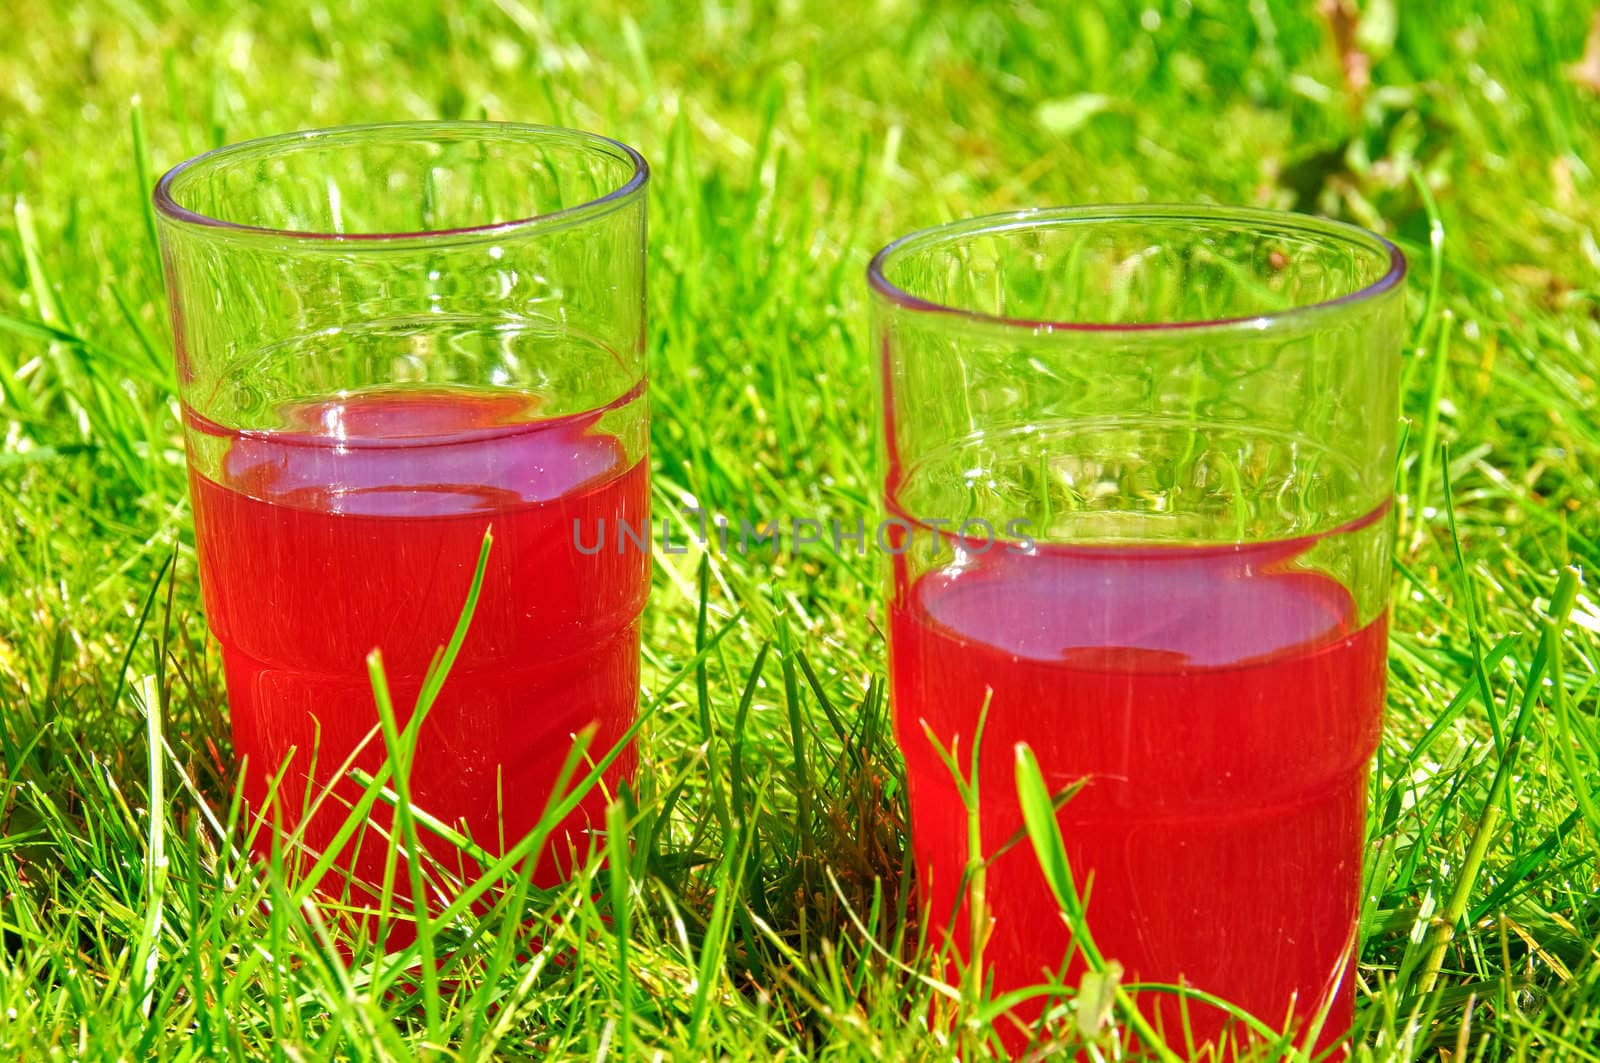 Rhubarb juice by GryT